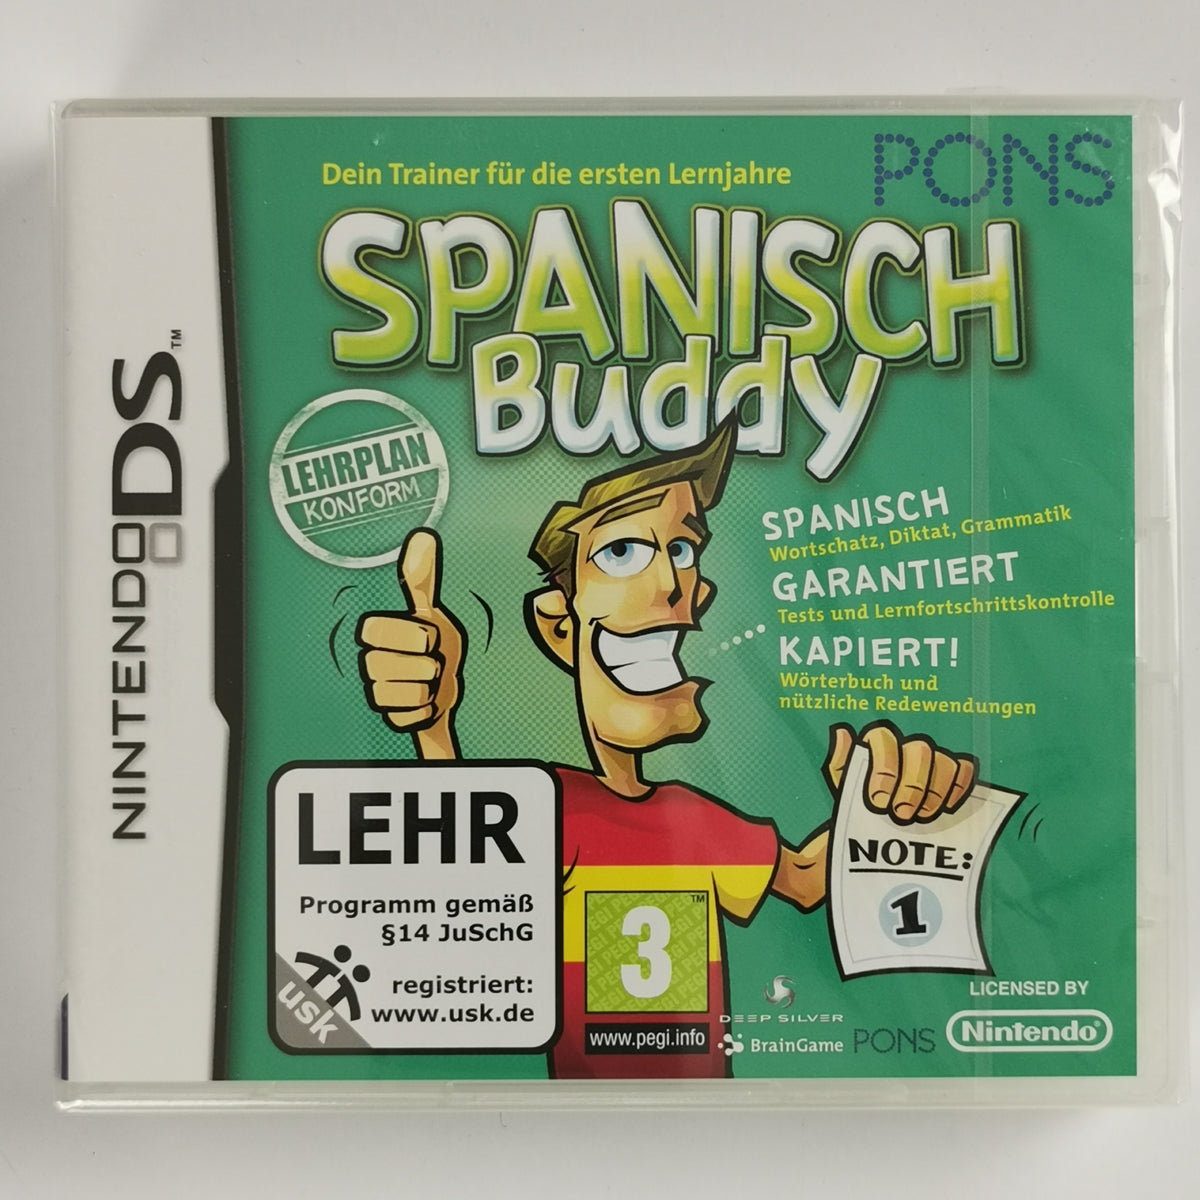 Spanisch Buddy: Dein Trainer [DS]